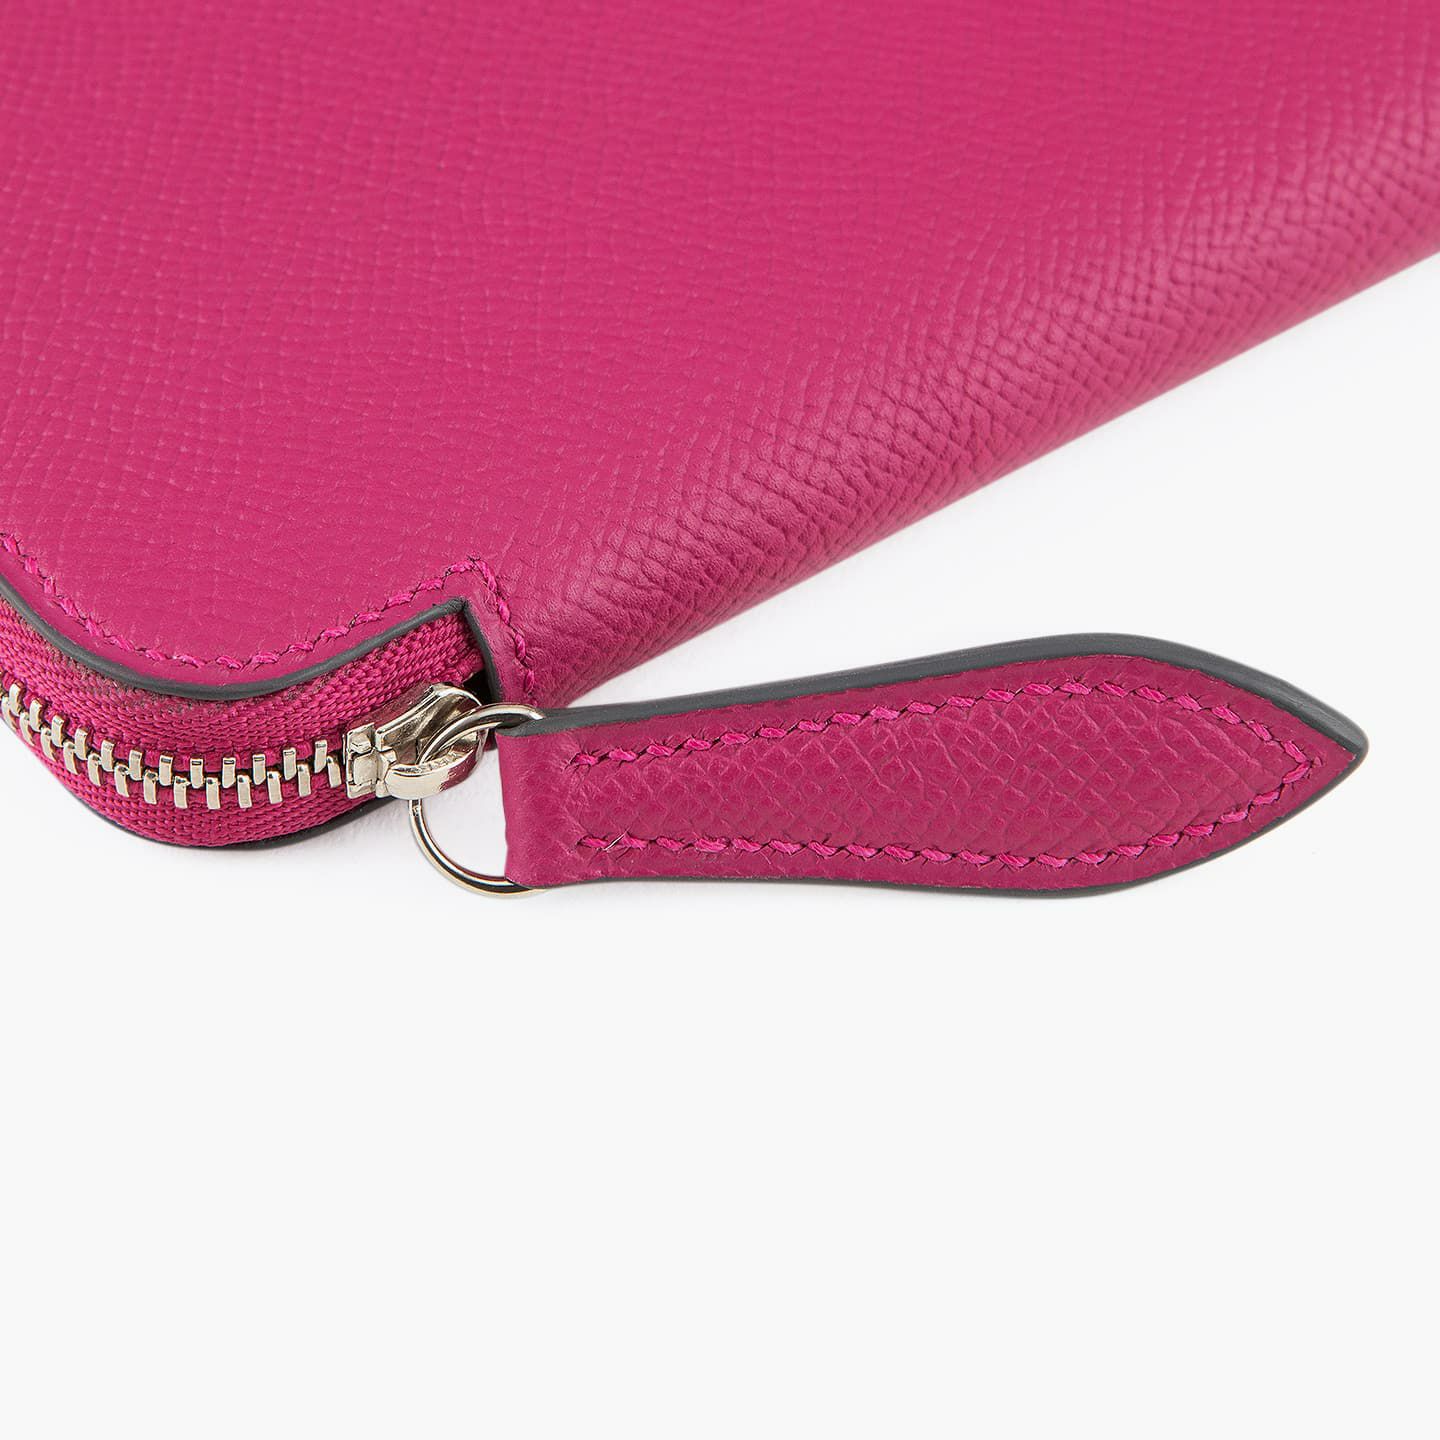 外装（ダービー）：Fuchsia、内装 カード段上（ダービー）：Tourterelle、内装（ダービー）：外装（ダービー）と同色、糸色：Magenta、ファスナー 金具：Silver ／ テープ：Fuchsia Pink